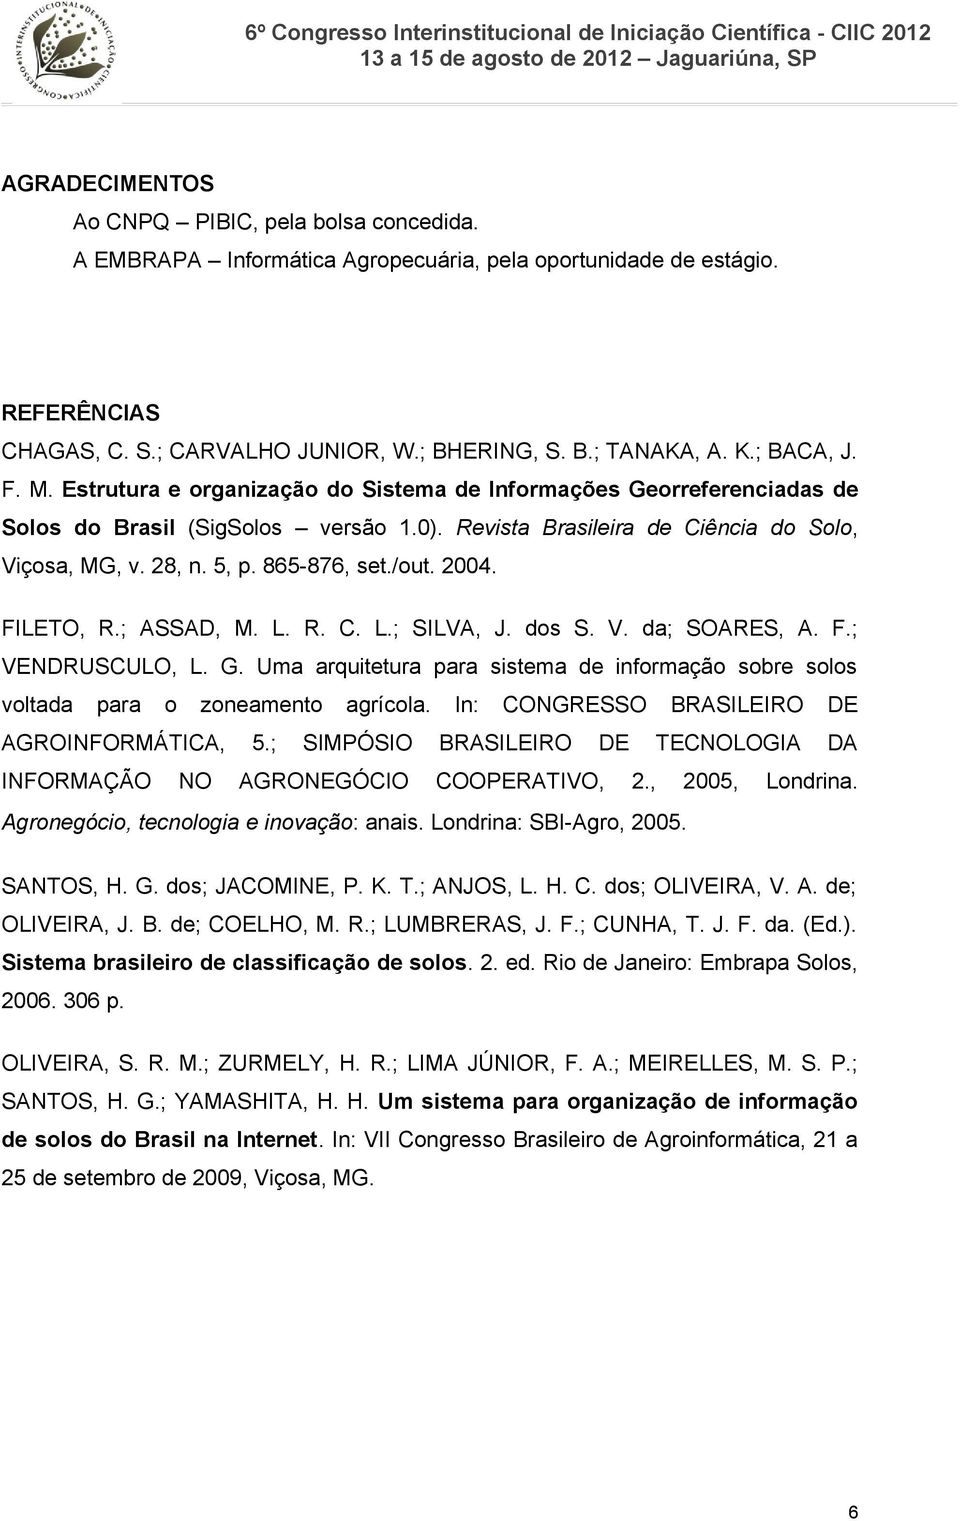 865-876, set./out. 2004. FILETO, R.; ASSAD, M. L. R. C. L.; SILVA, J. dos S. V. da; SOARES, A. F.; VENDRUSCULO, L. G.